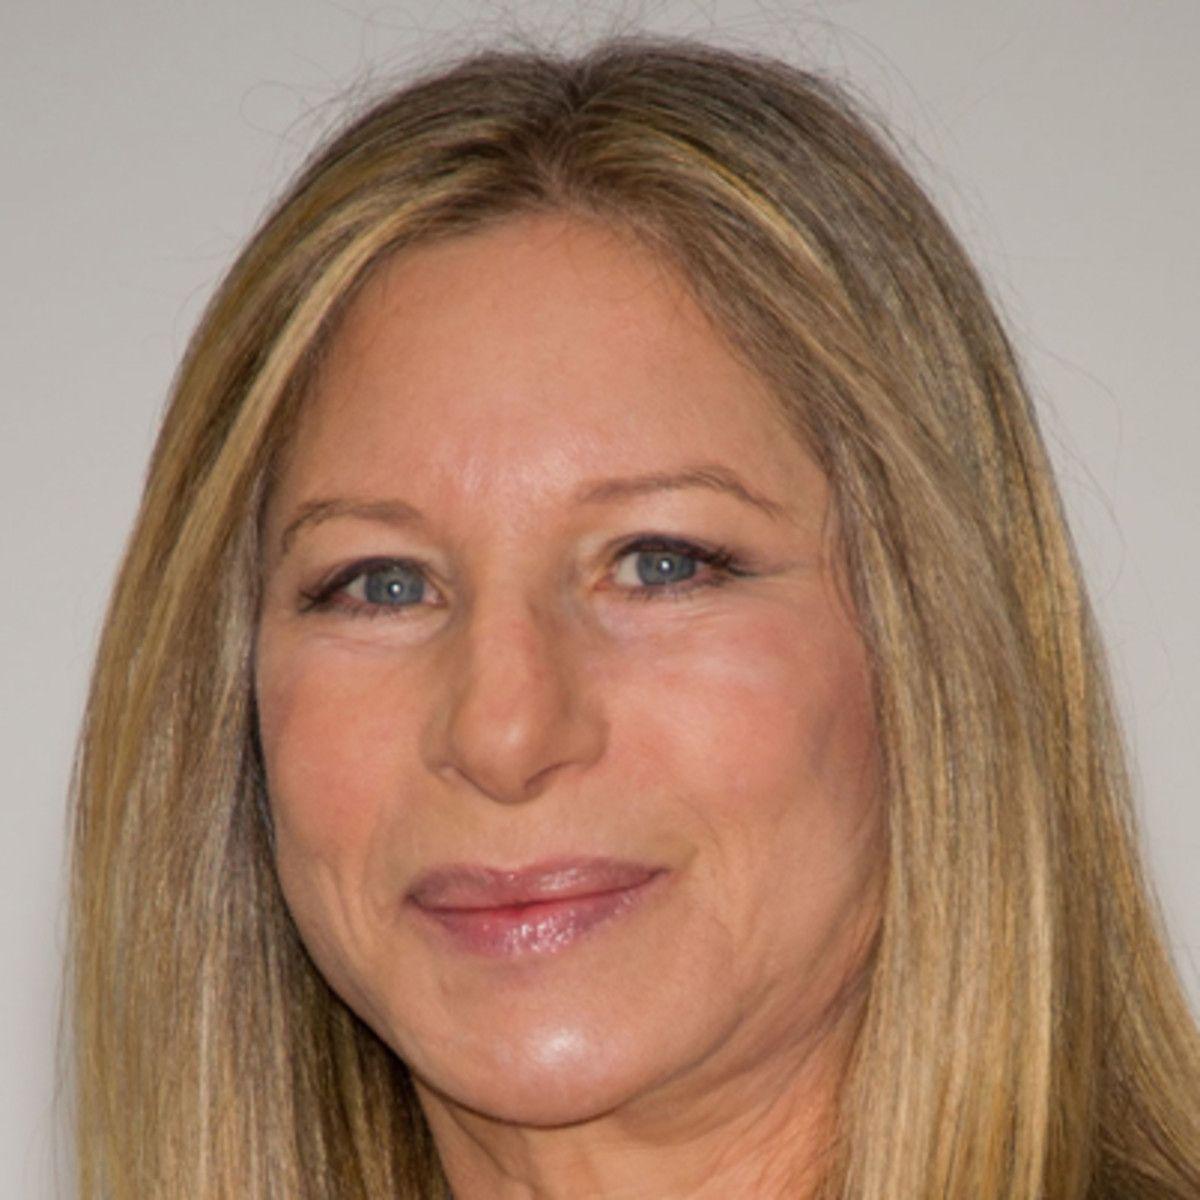 Barbra Streisand, Singer